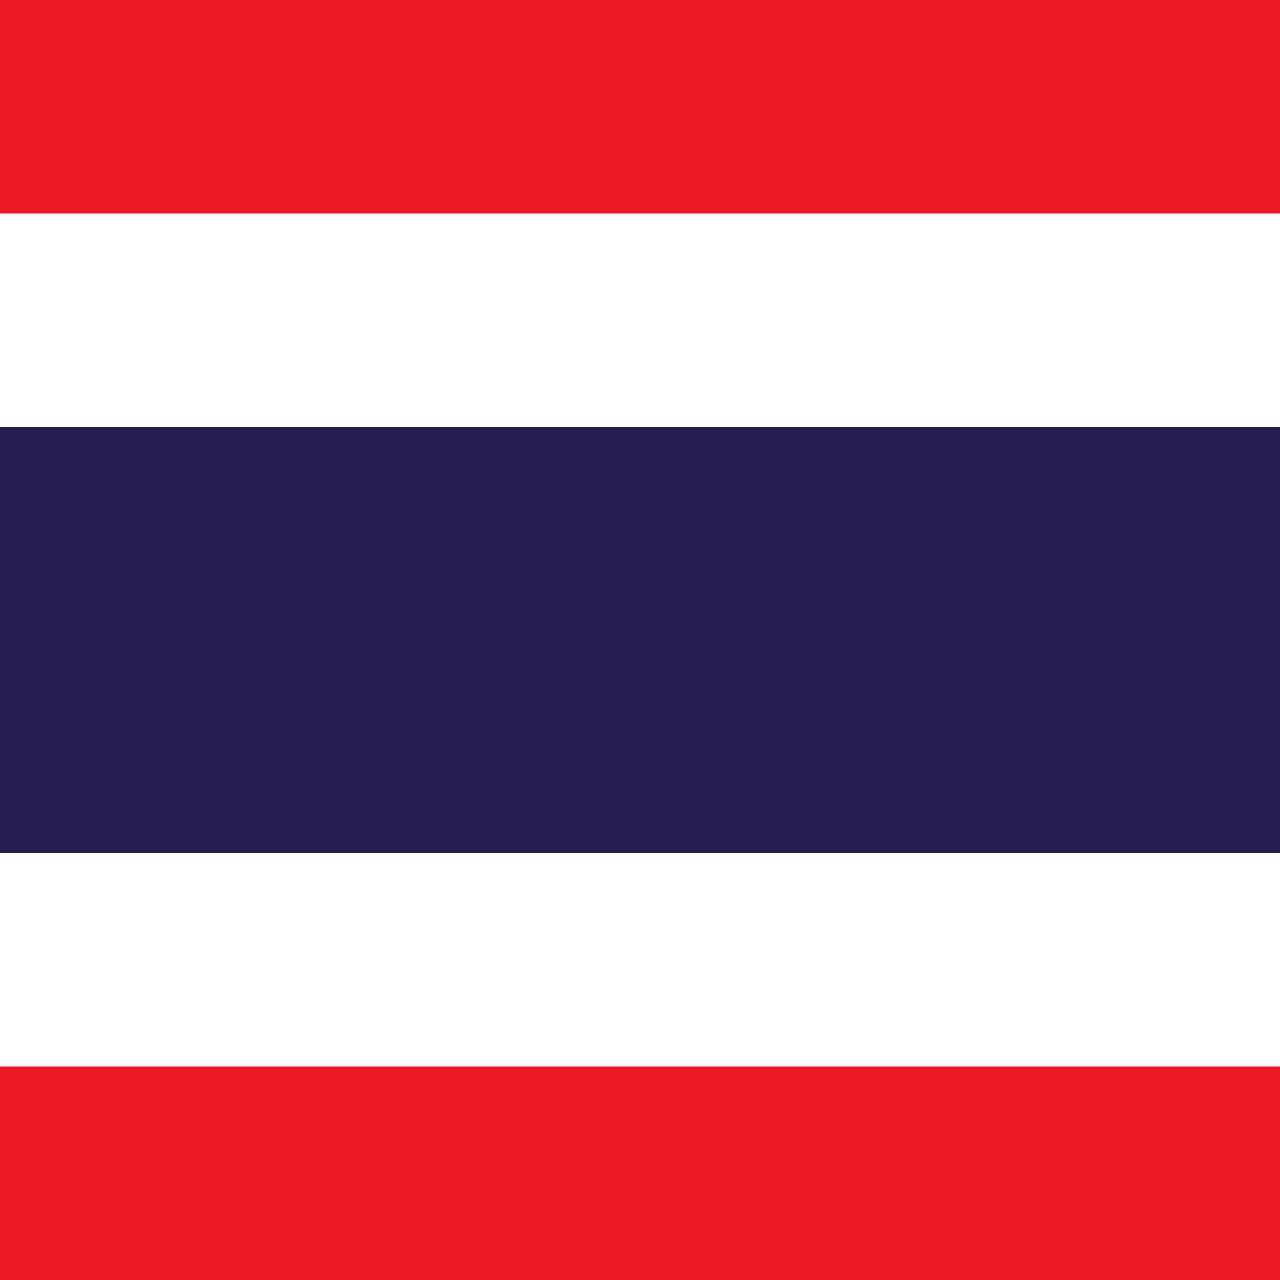 https://neelikon.co.uk/wp-content/uploads/2022/03/thailand-flag.jpg